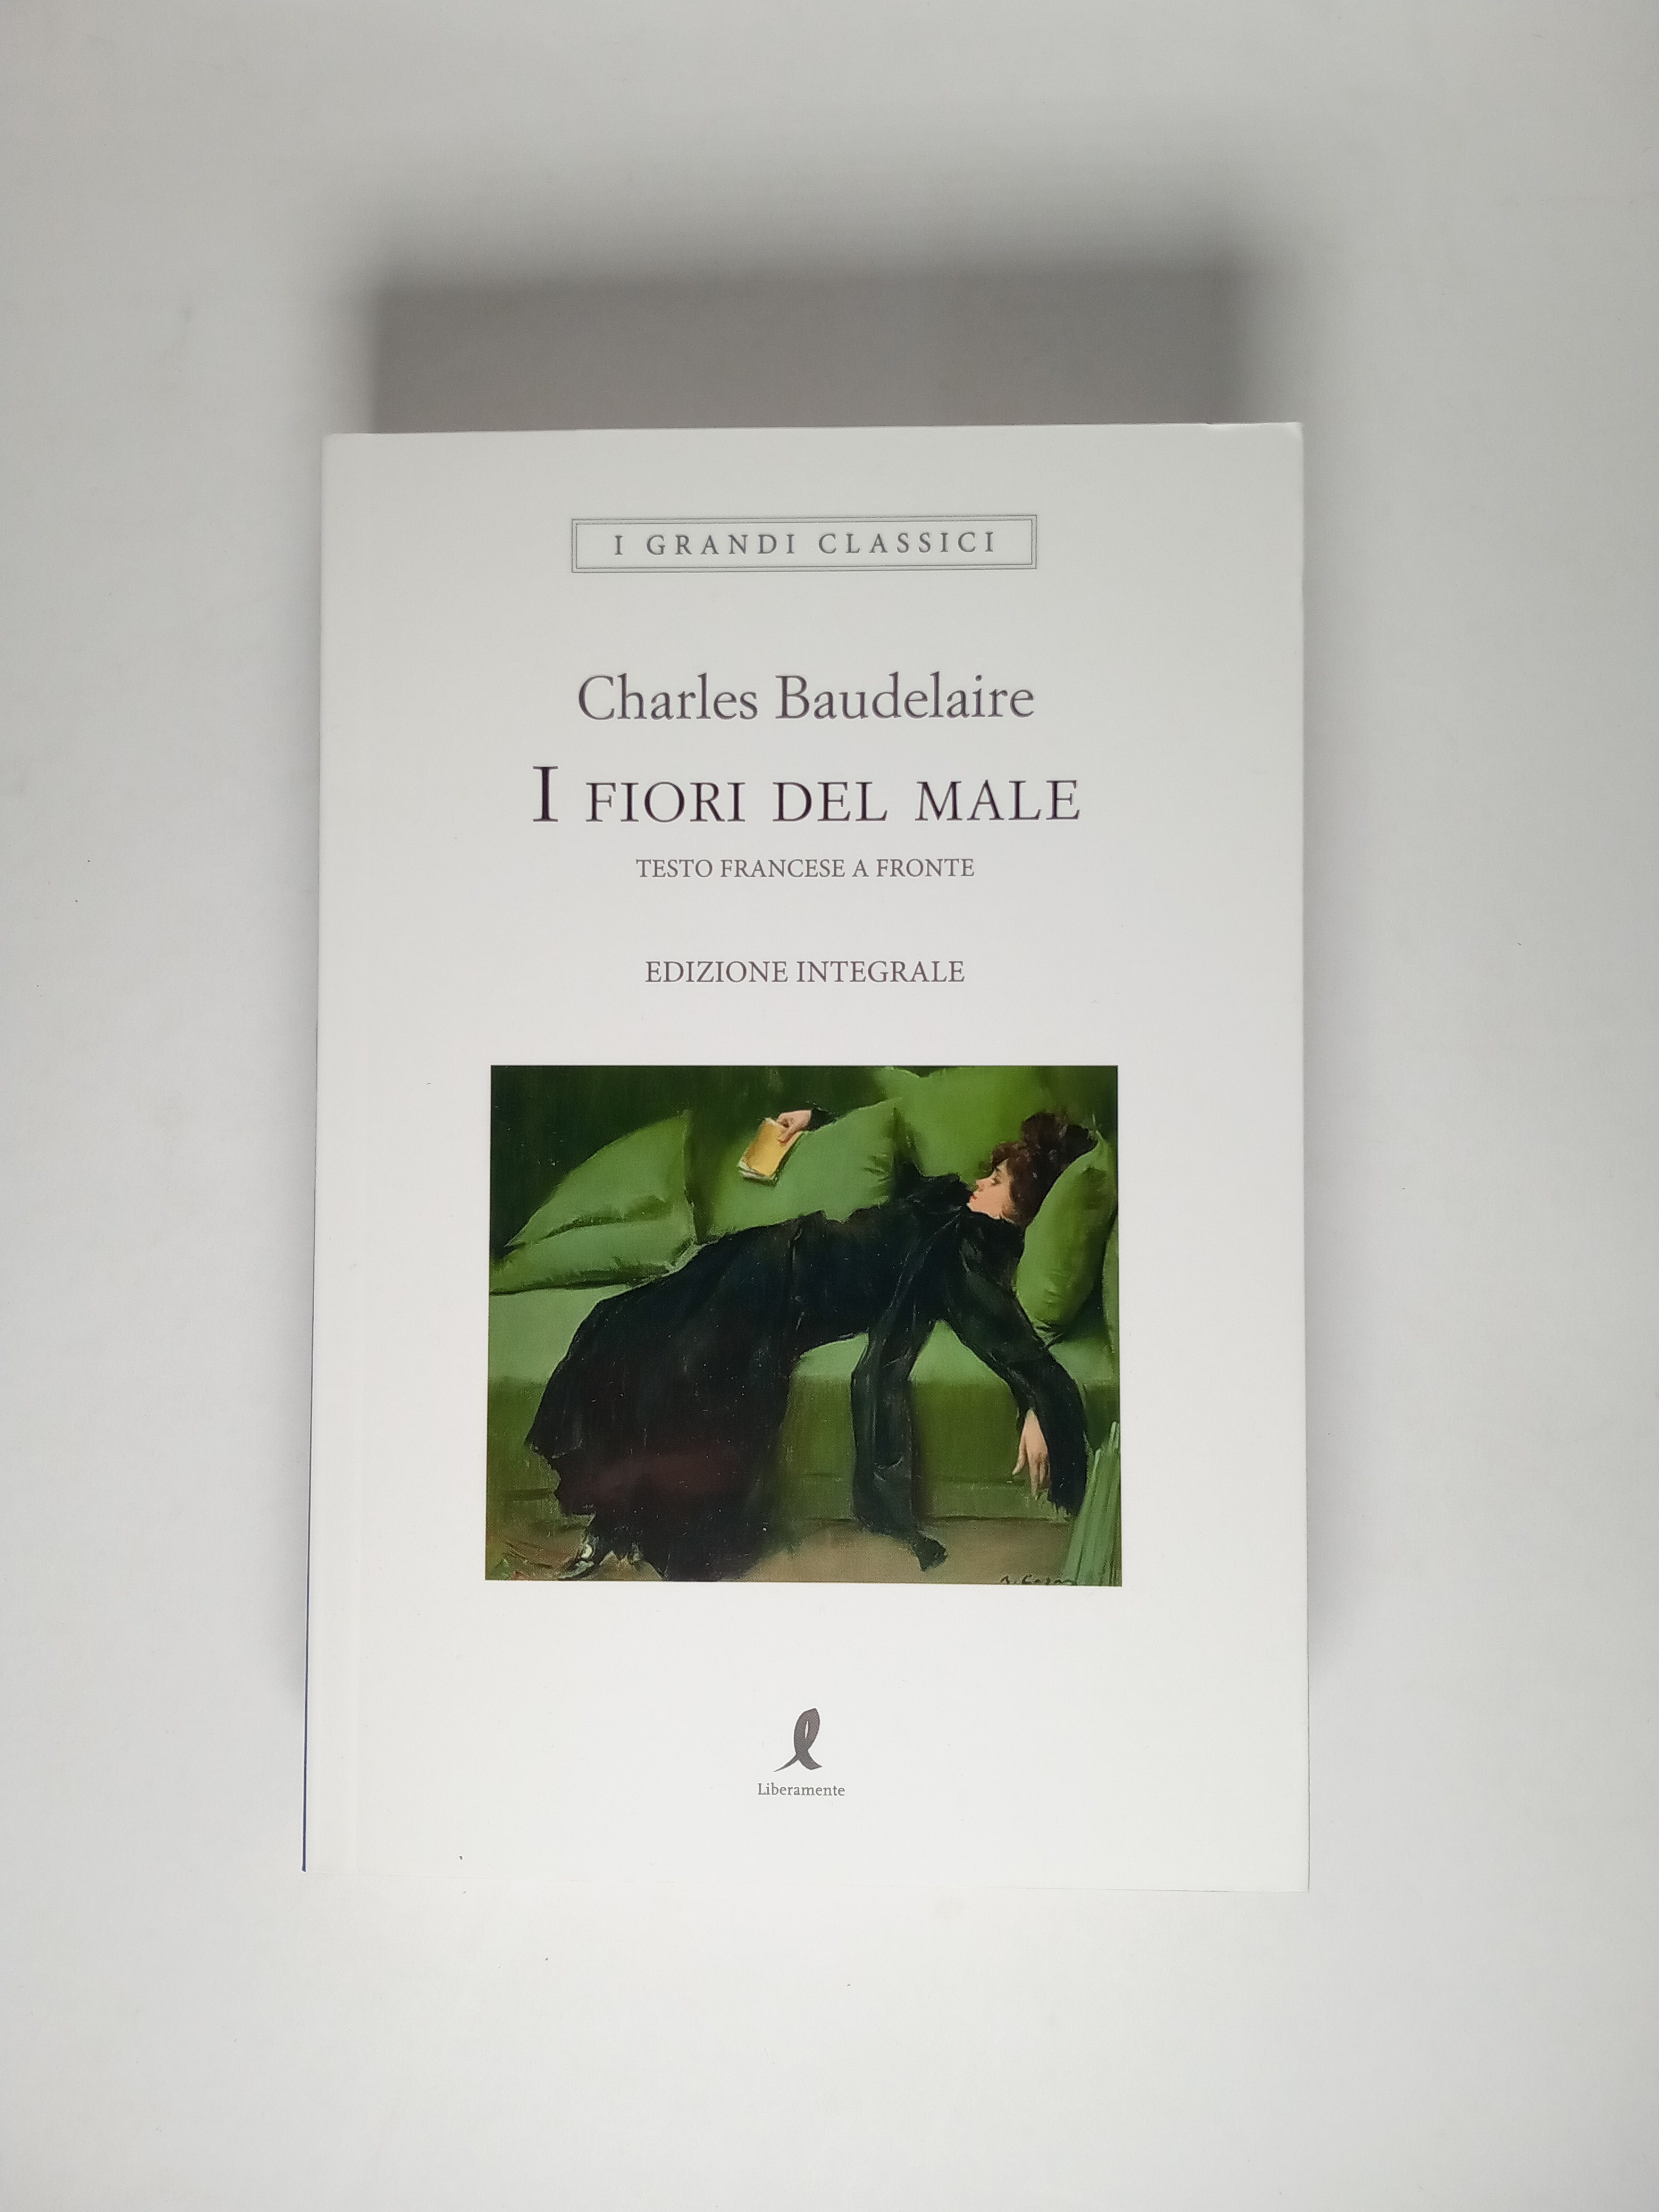 Charles Baudelaire - I fiori del male (testo francese a fronte) -  Liberamente 2020